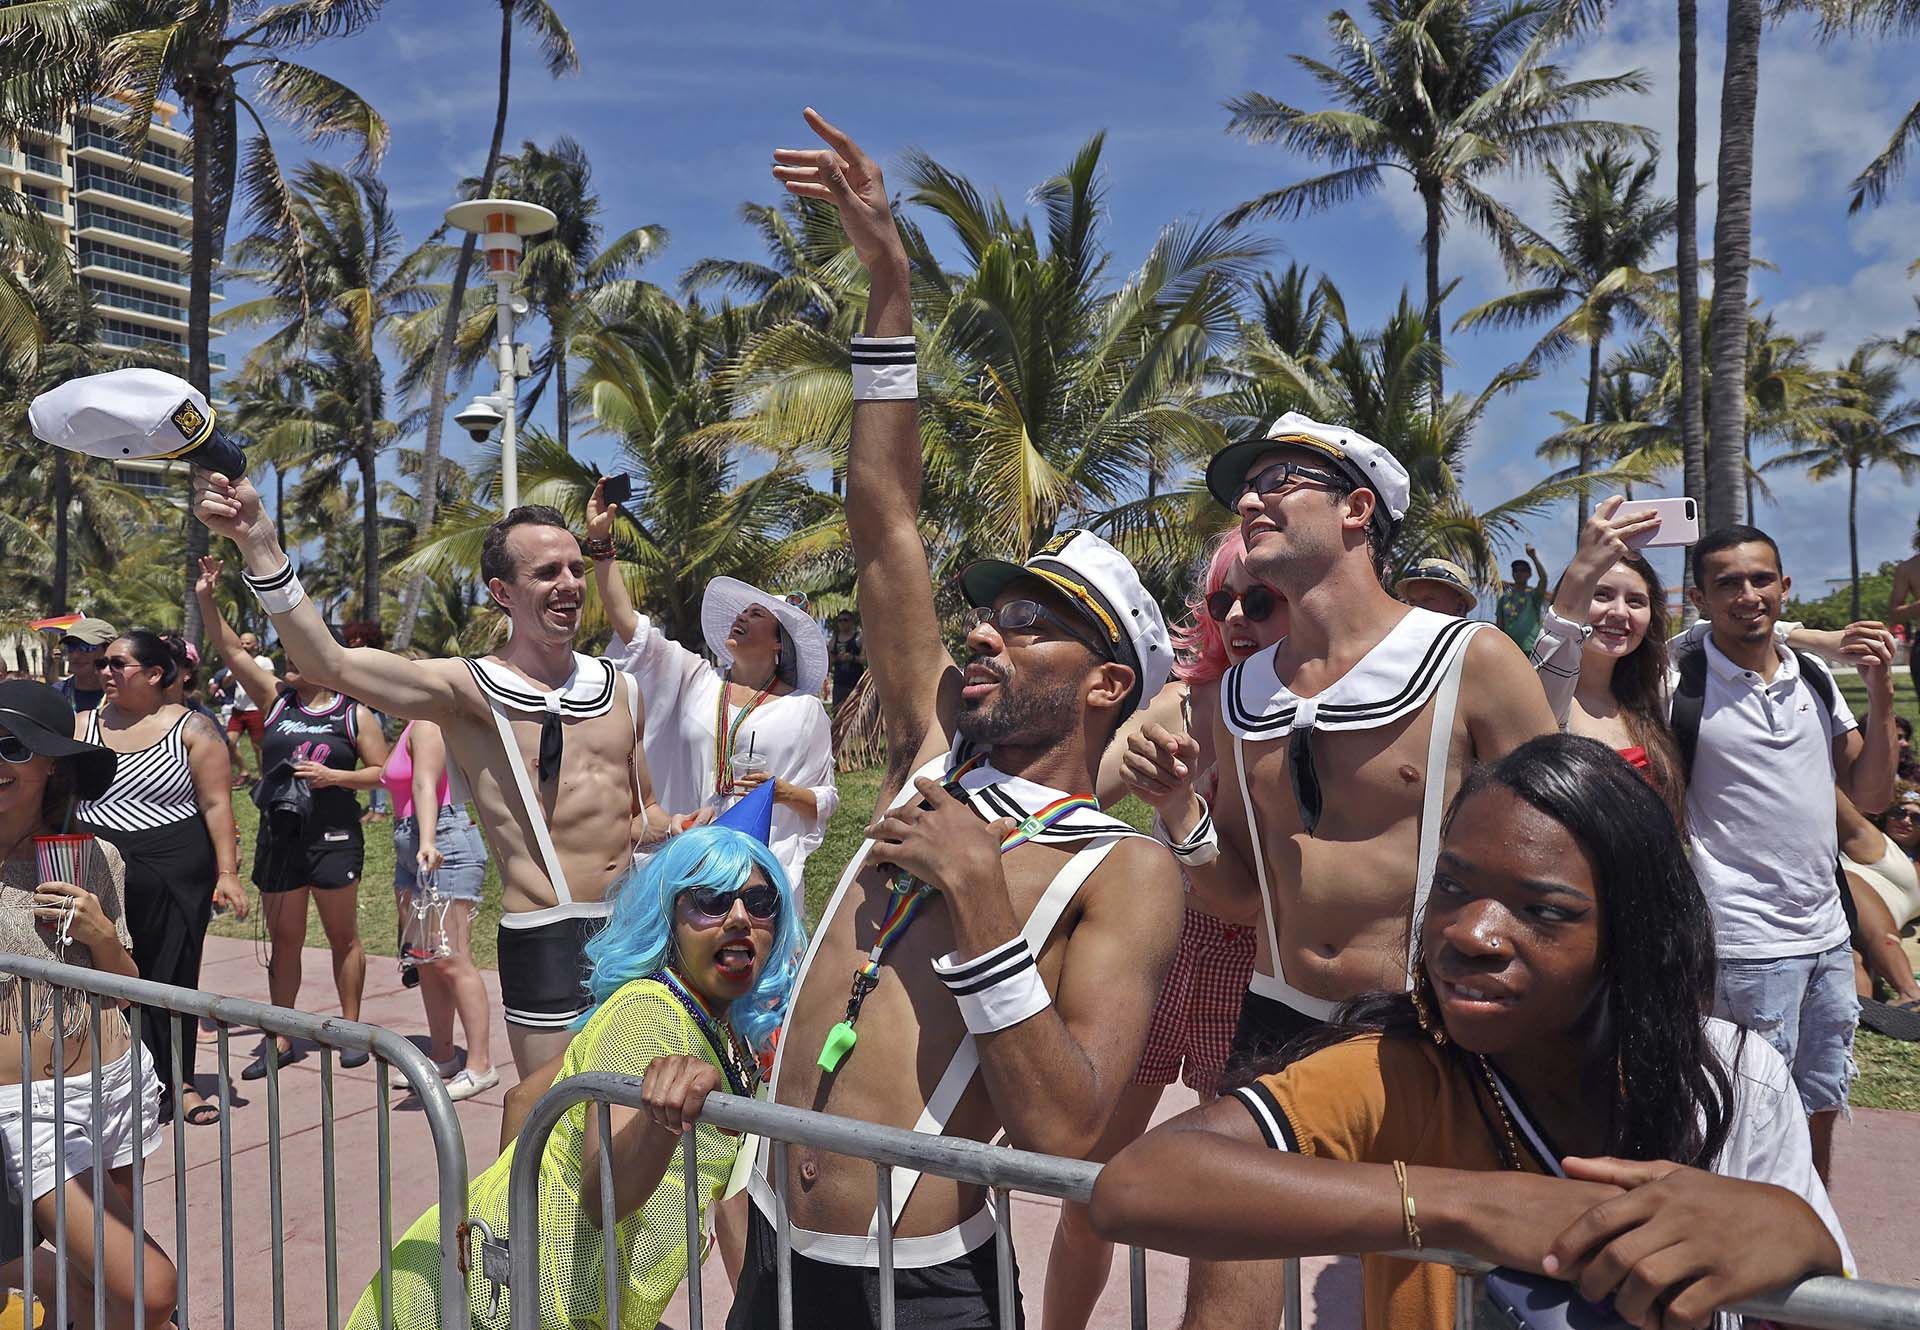 El festival principal en Lummus Park reúne actuaciones en vivo, música y baile en un espacio inclusivo durante el fin de semana más esperado del Miami Beach Pride. (Carl Juste/ AP)